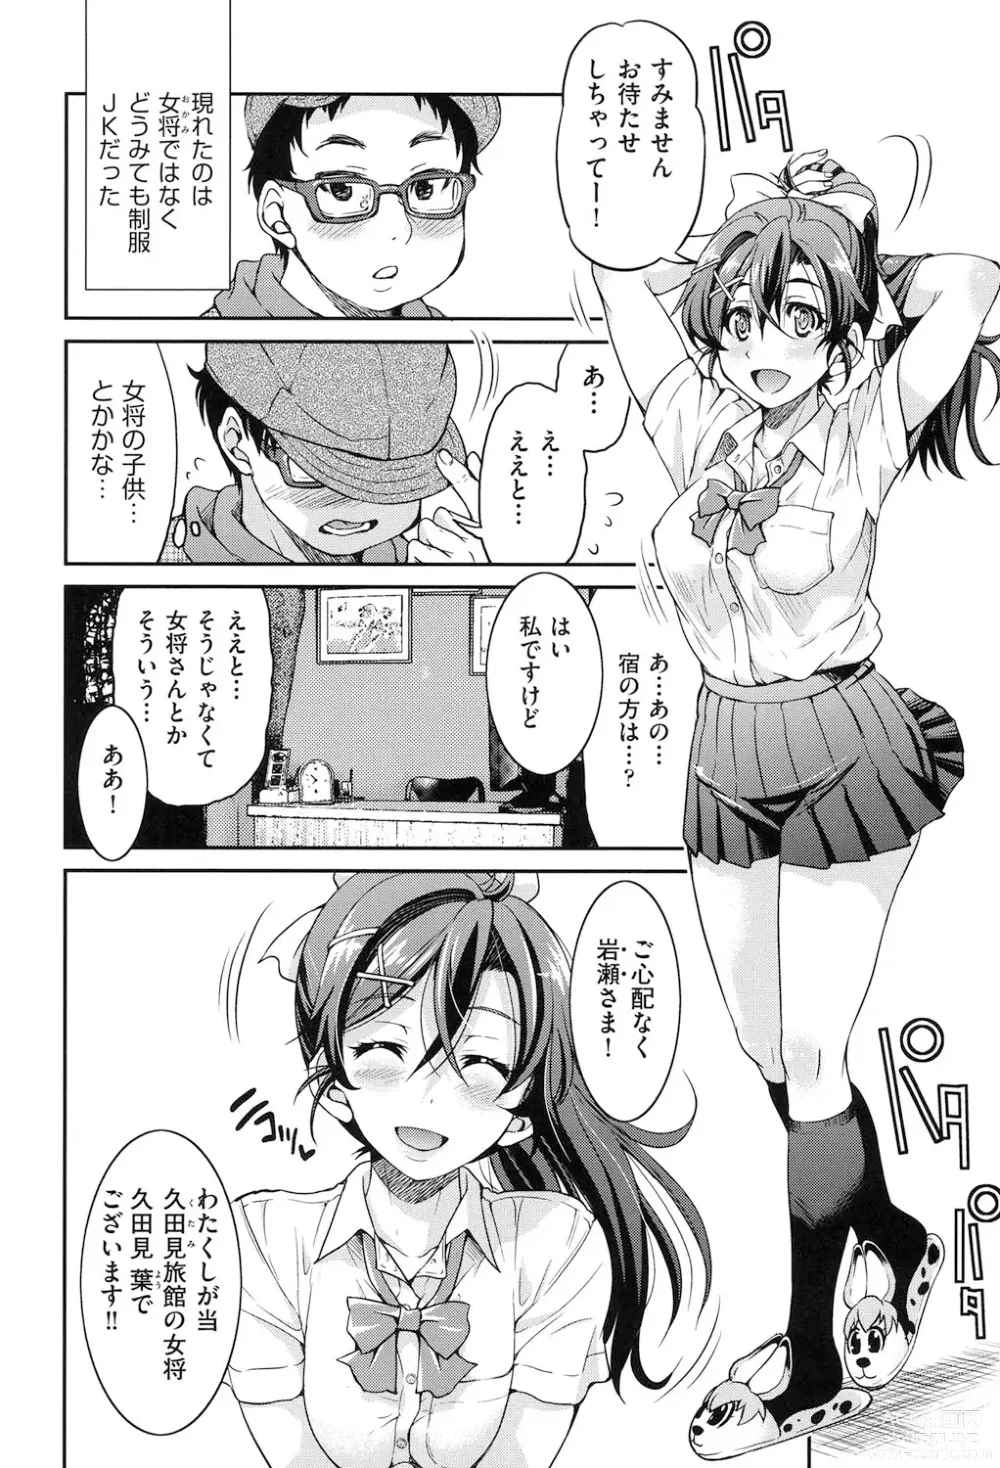 Page 9 of manga Seifuku JK